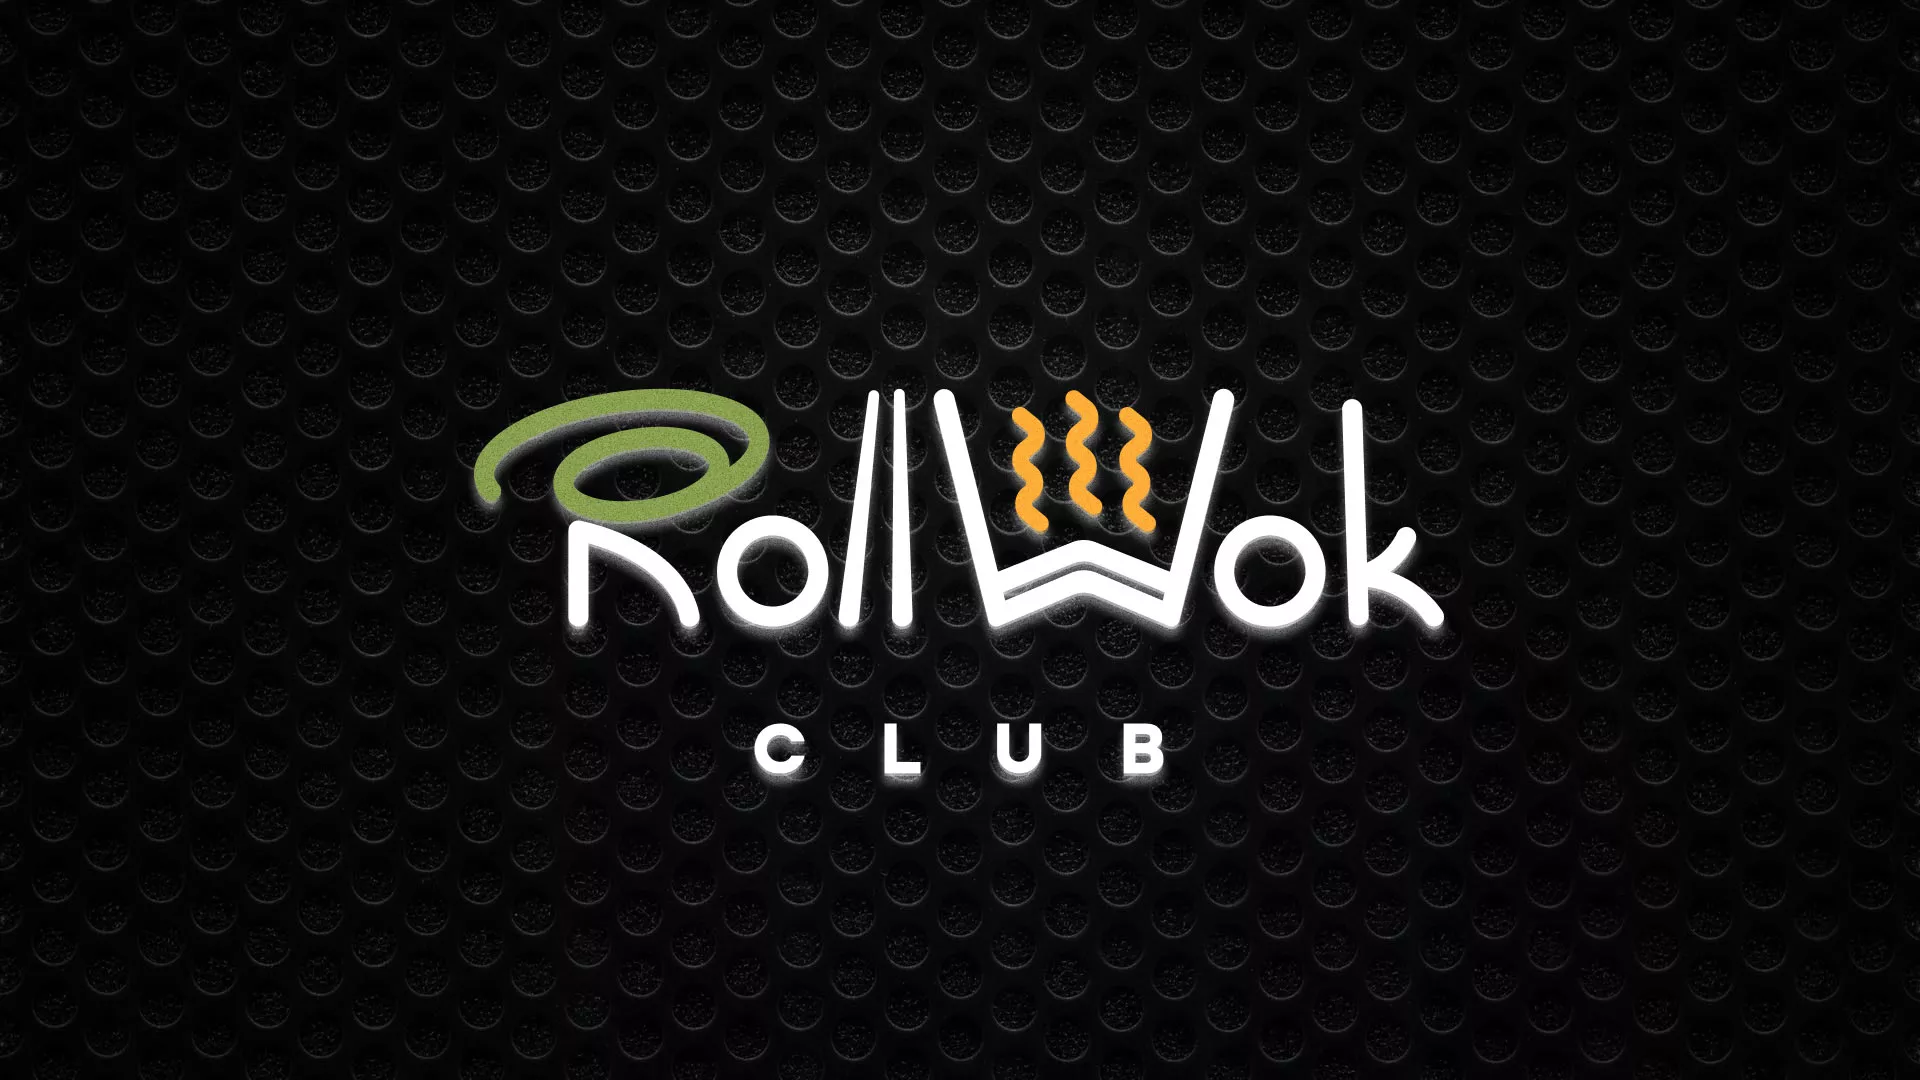 Брендирование торговых точек суши-бара «Roll Wok Club» в Суздале